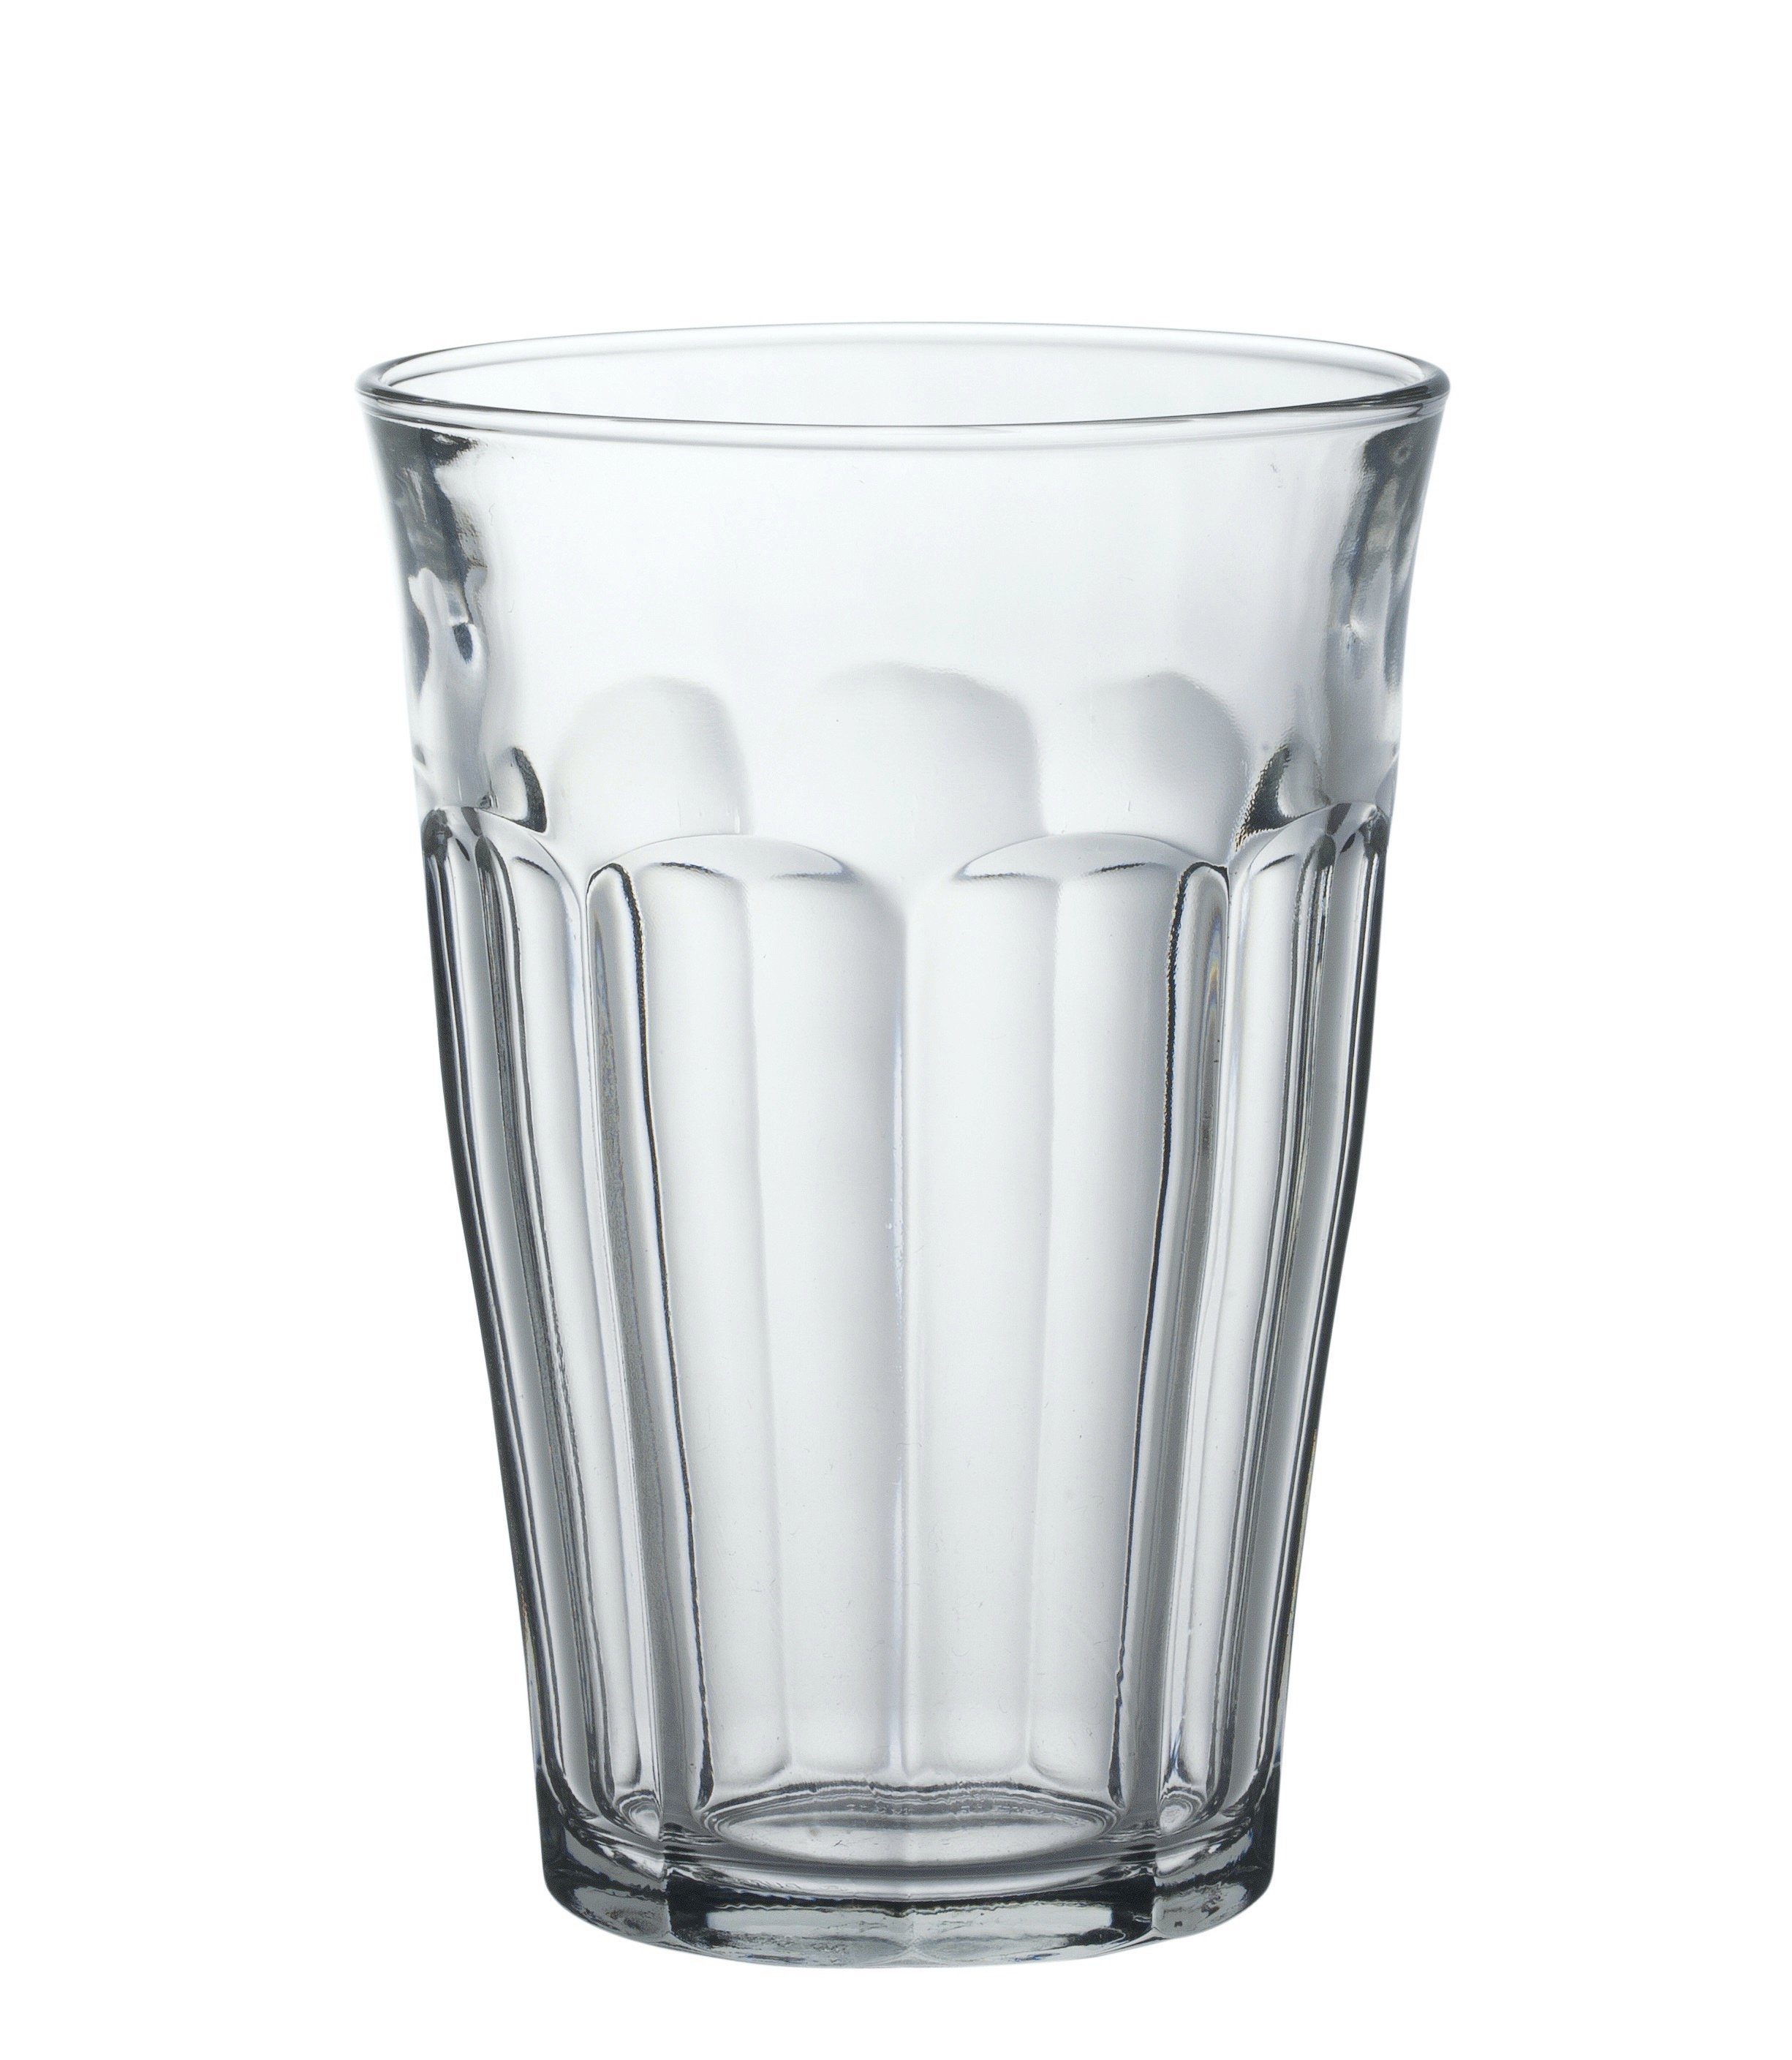 Glas Glas 6 gehärtet gehärtet, Transparent Füllstrich bei Stück Tumbler-Glas Duralex Picardie, 0.3l 03l 360ml Tumbler Trinkglas